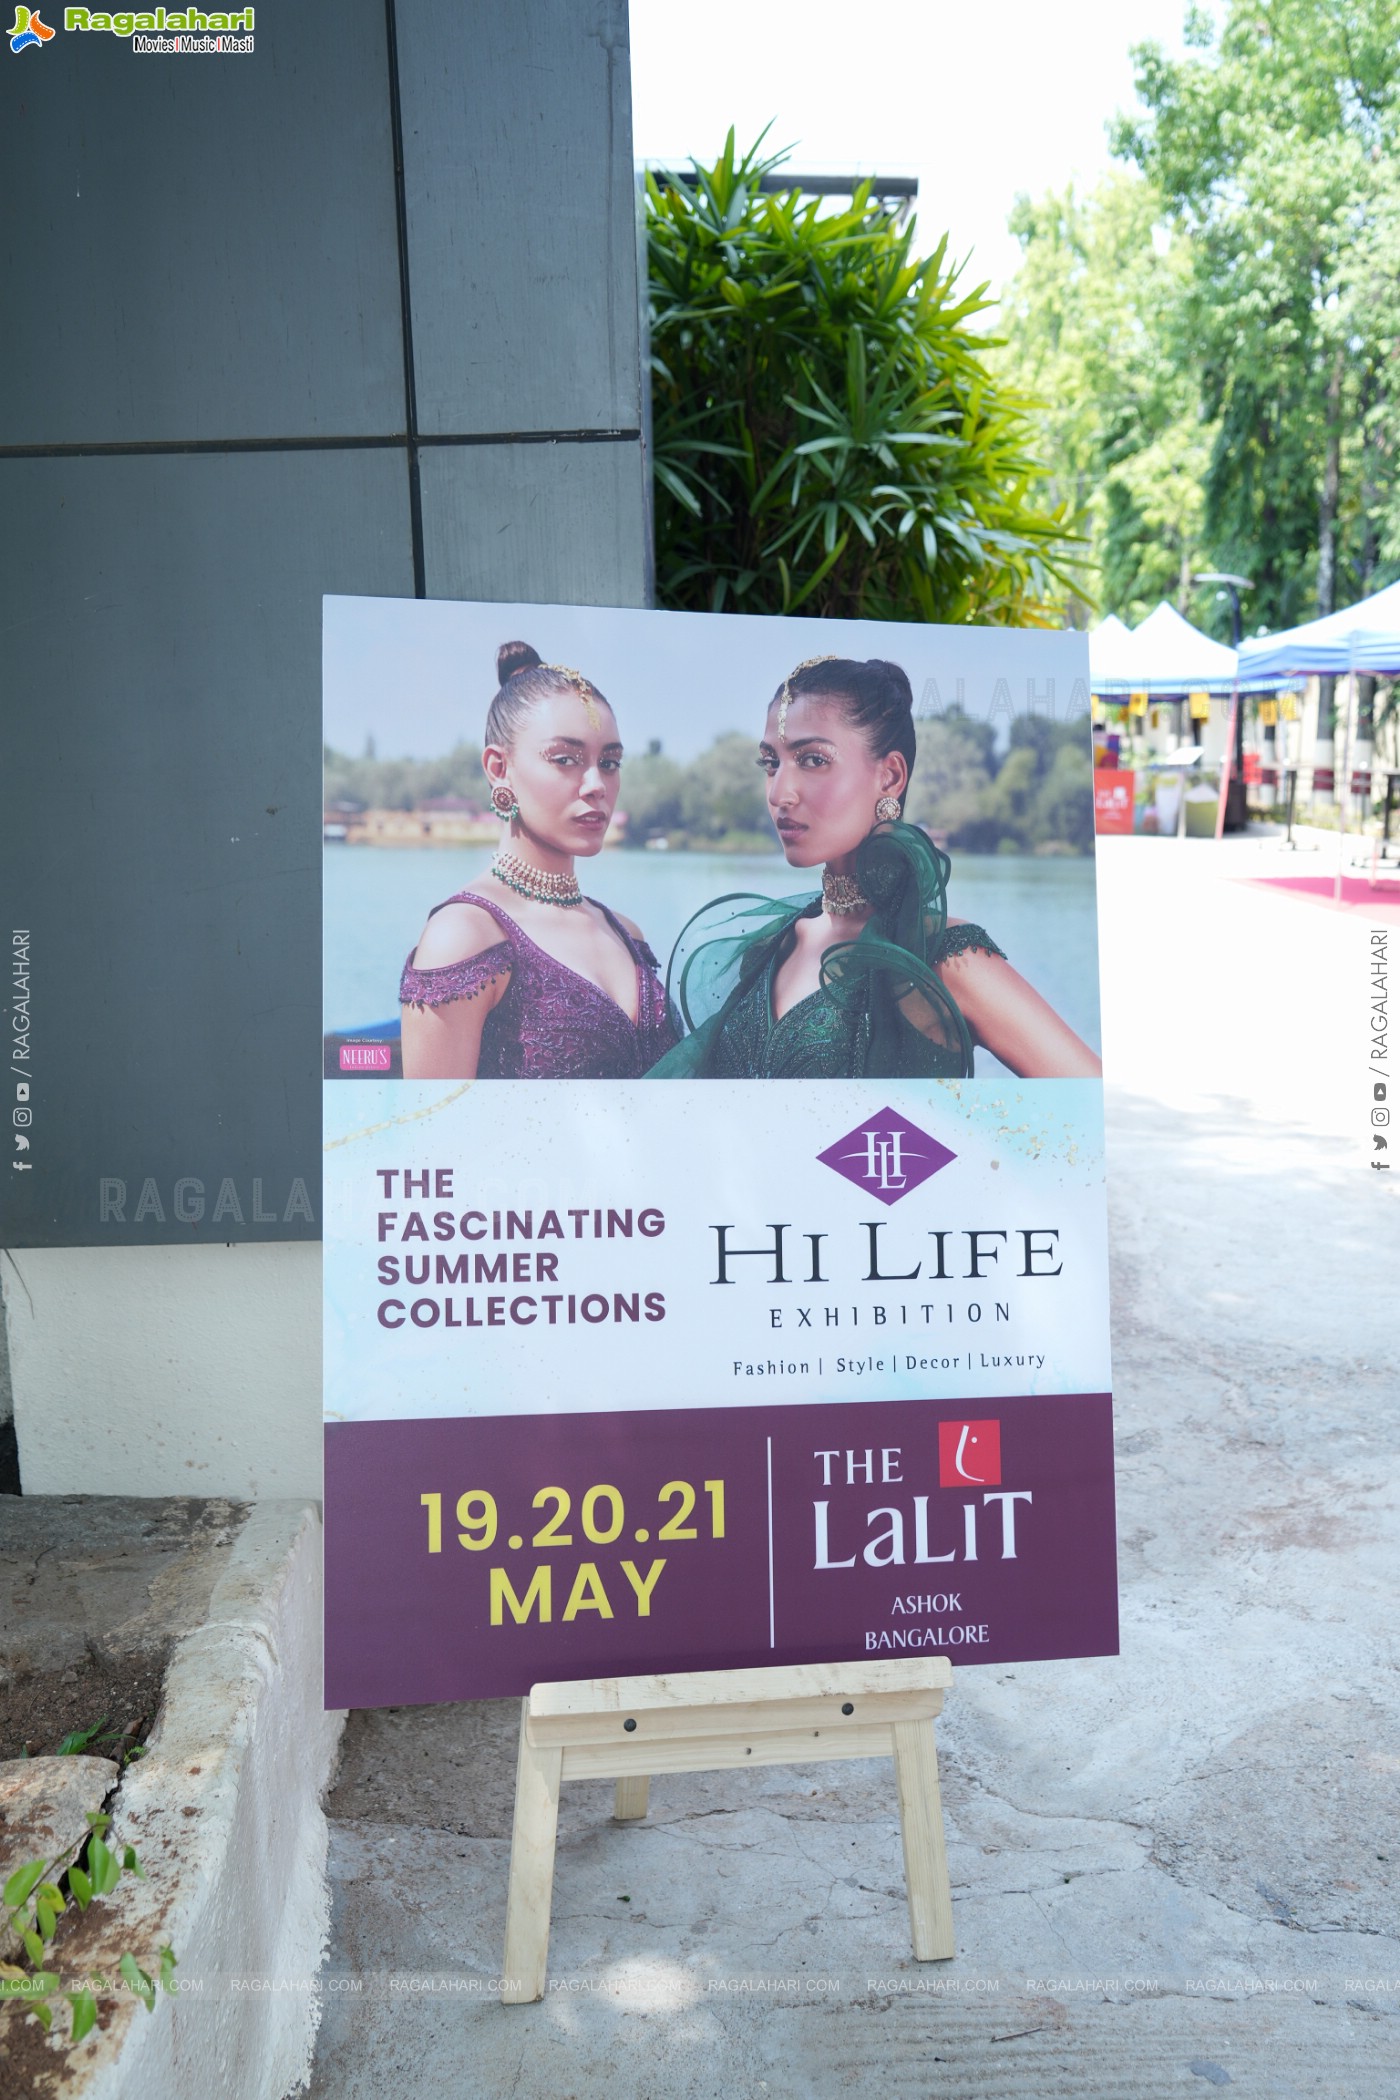 Hi Life Exhibition May 2023 Kicks Off at The Lalit Ashok, Bangalore